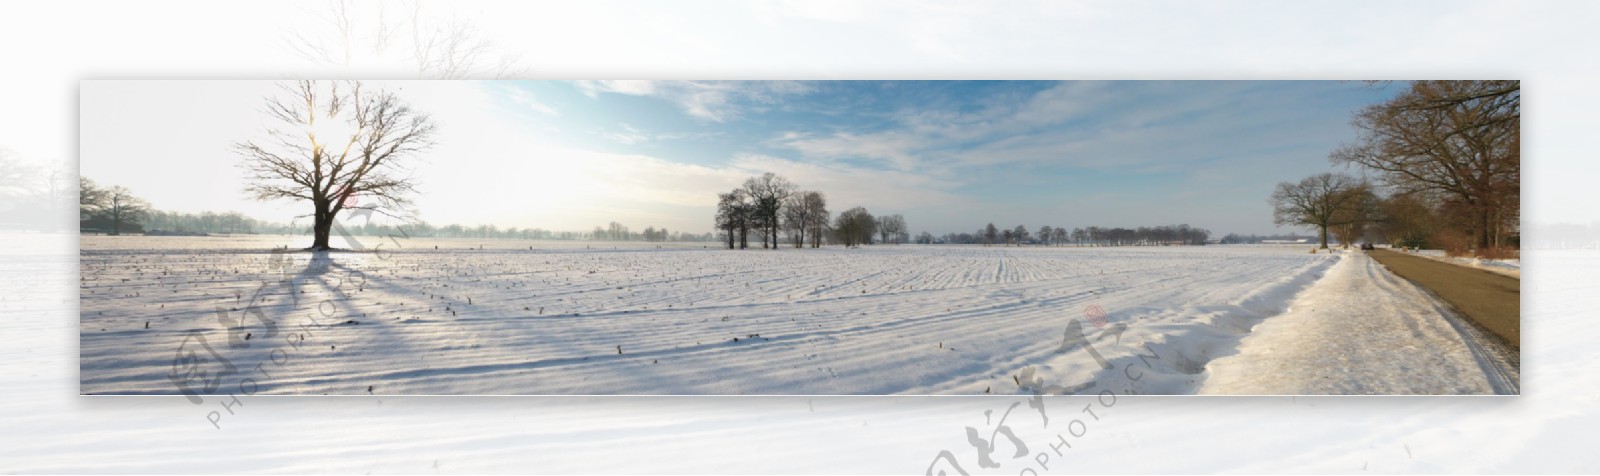 宽幅冬季雪景图片